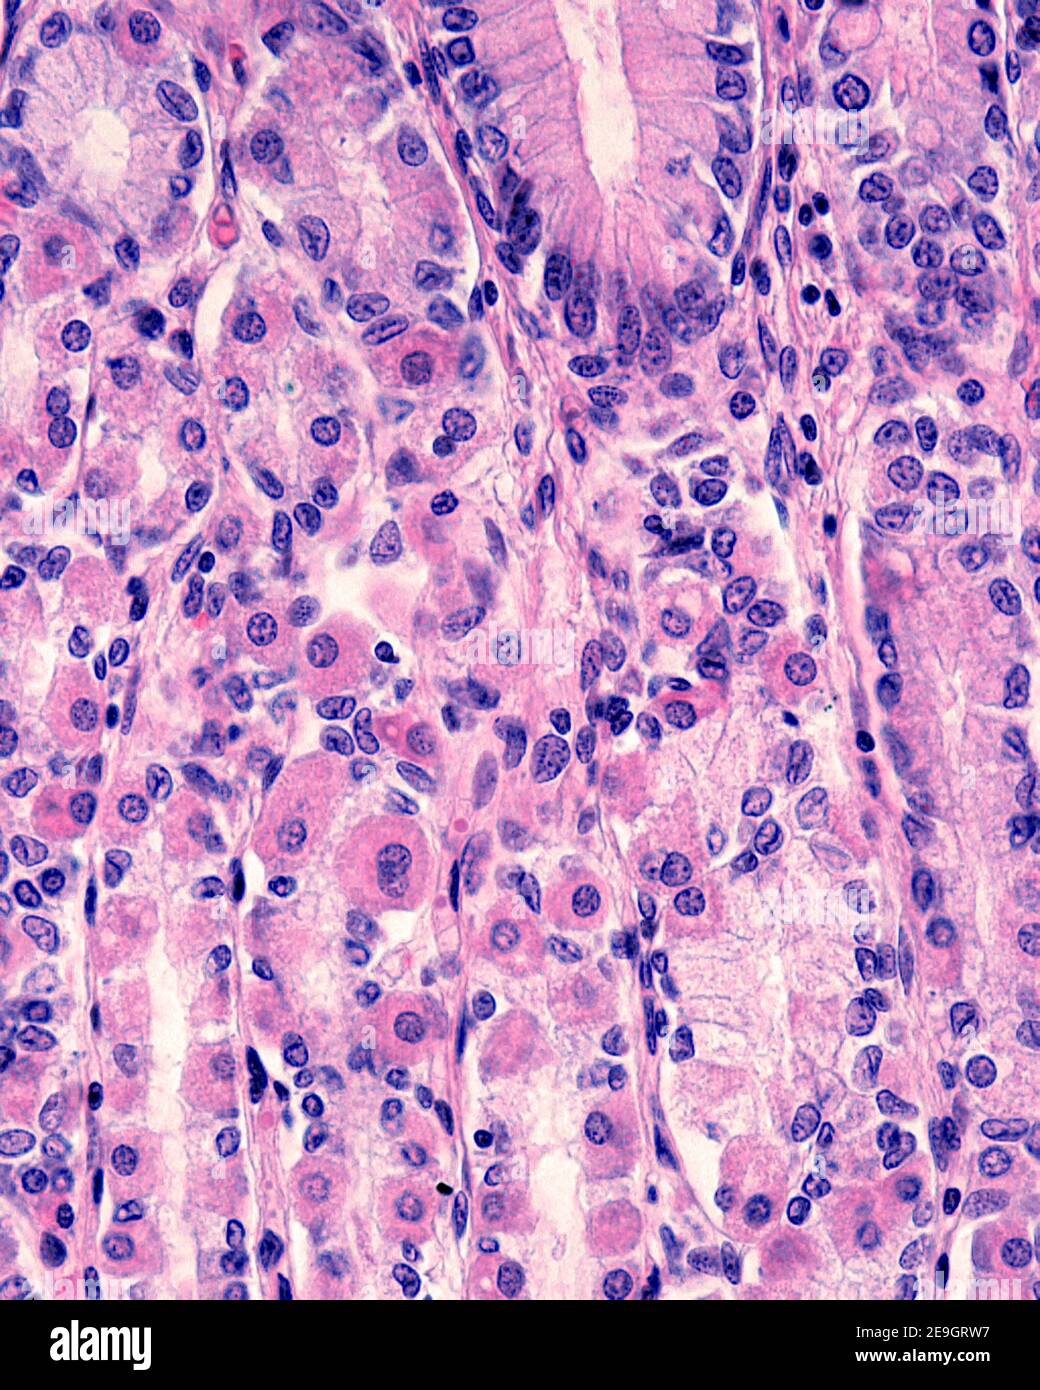 Les cellules pariétales (oxystiques) sont des cellules de type cellulaire situées dans les glandes fundiques de l'estomac. Ils ont un cytoplasme éosinophile (rose). Banque D'Images